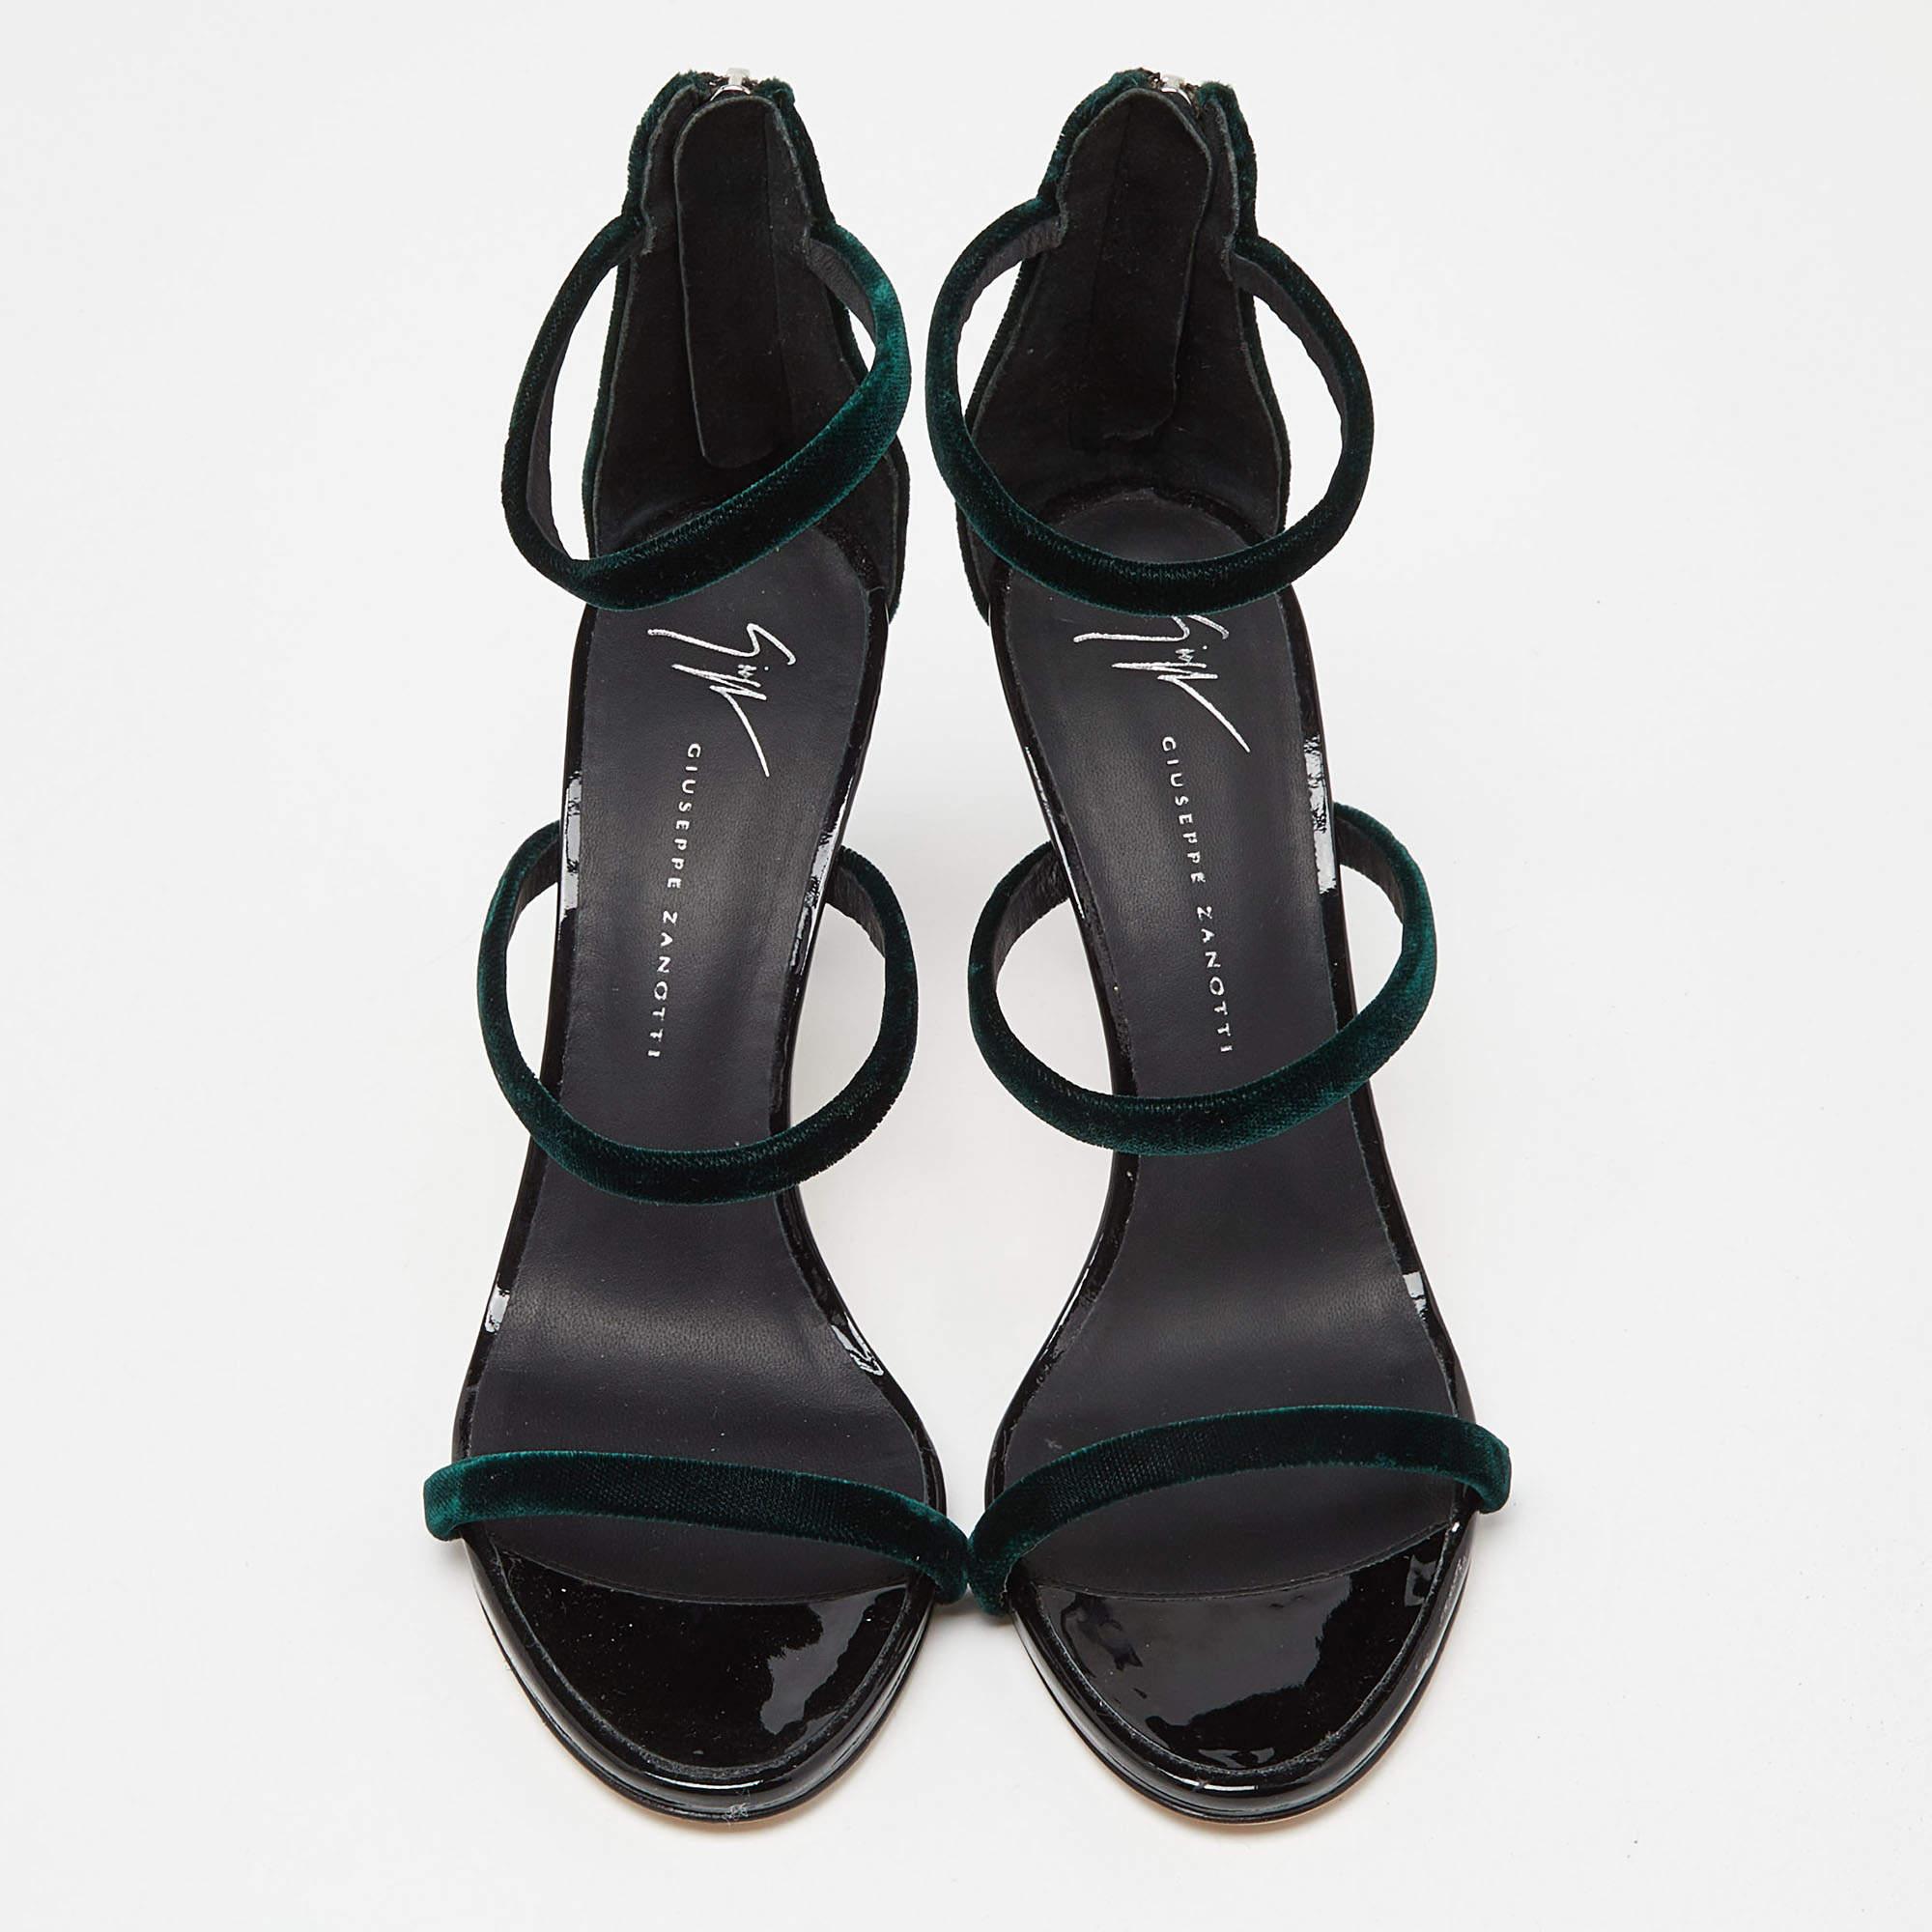 Ces sandales encadreront vos pieds de manière élégante. Fabriquées à partir de matériaux de qualité, elles présentent un design élégant et des semelles intérieures confortables.

